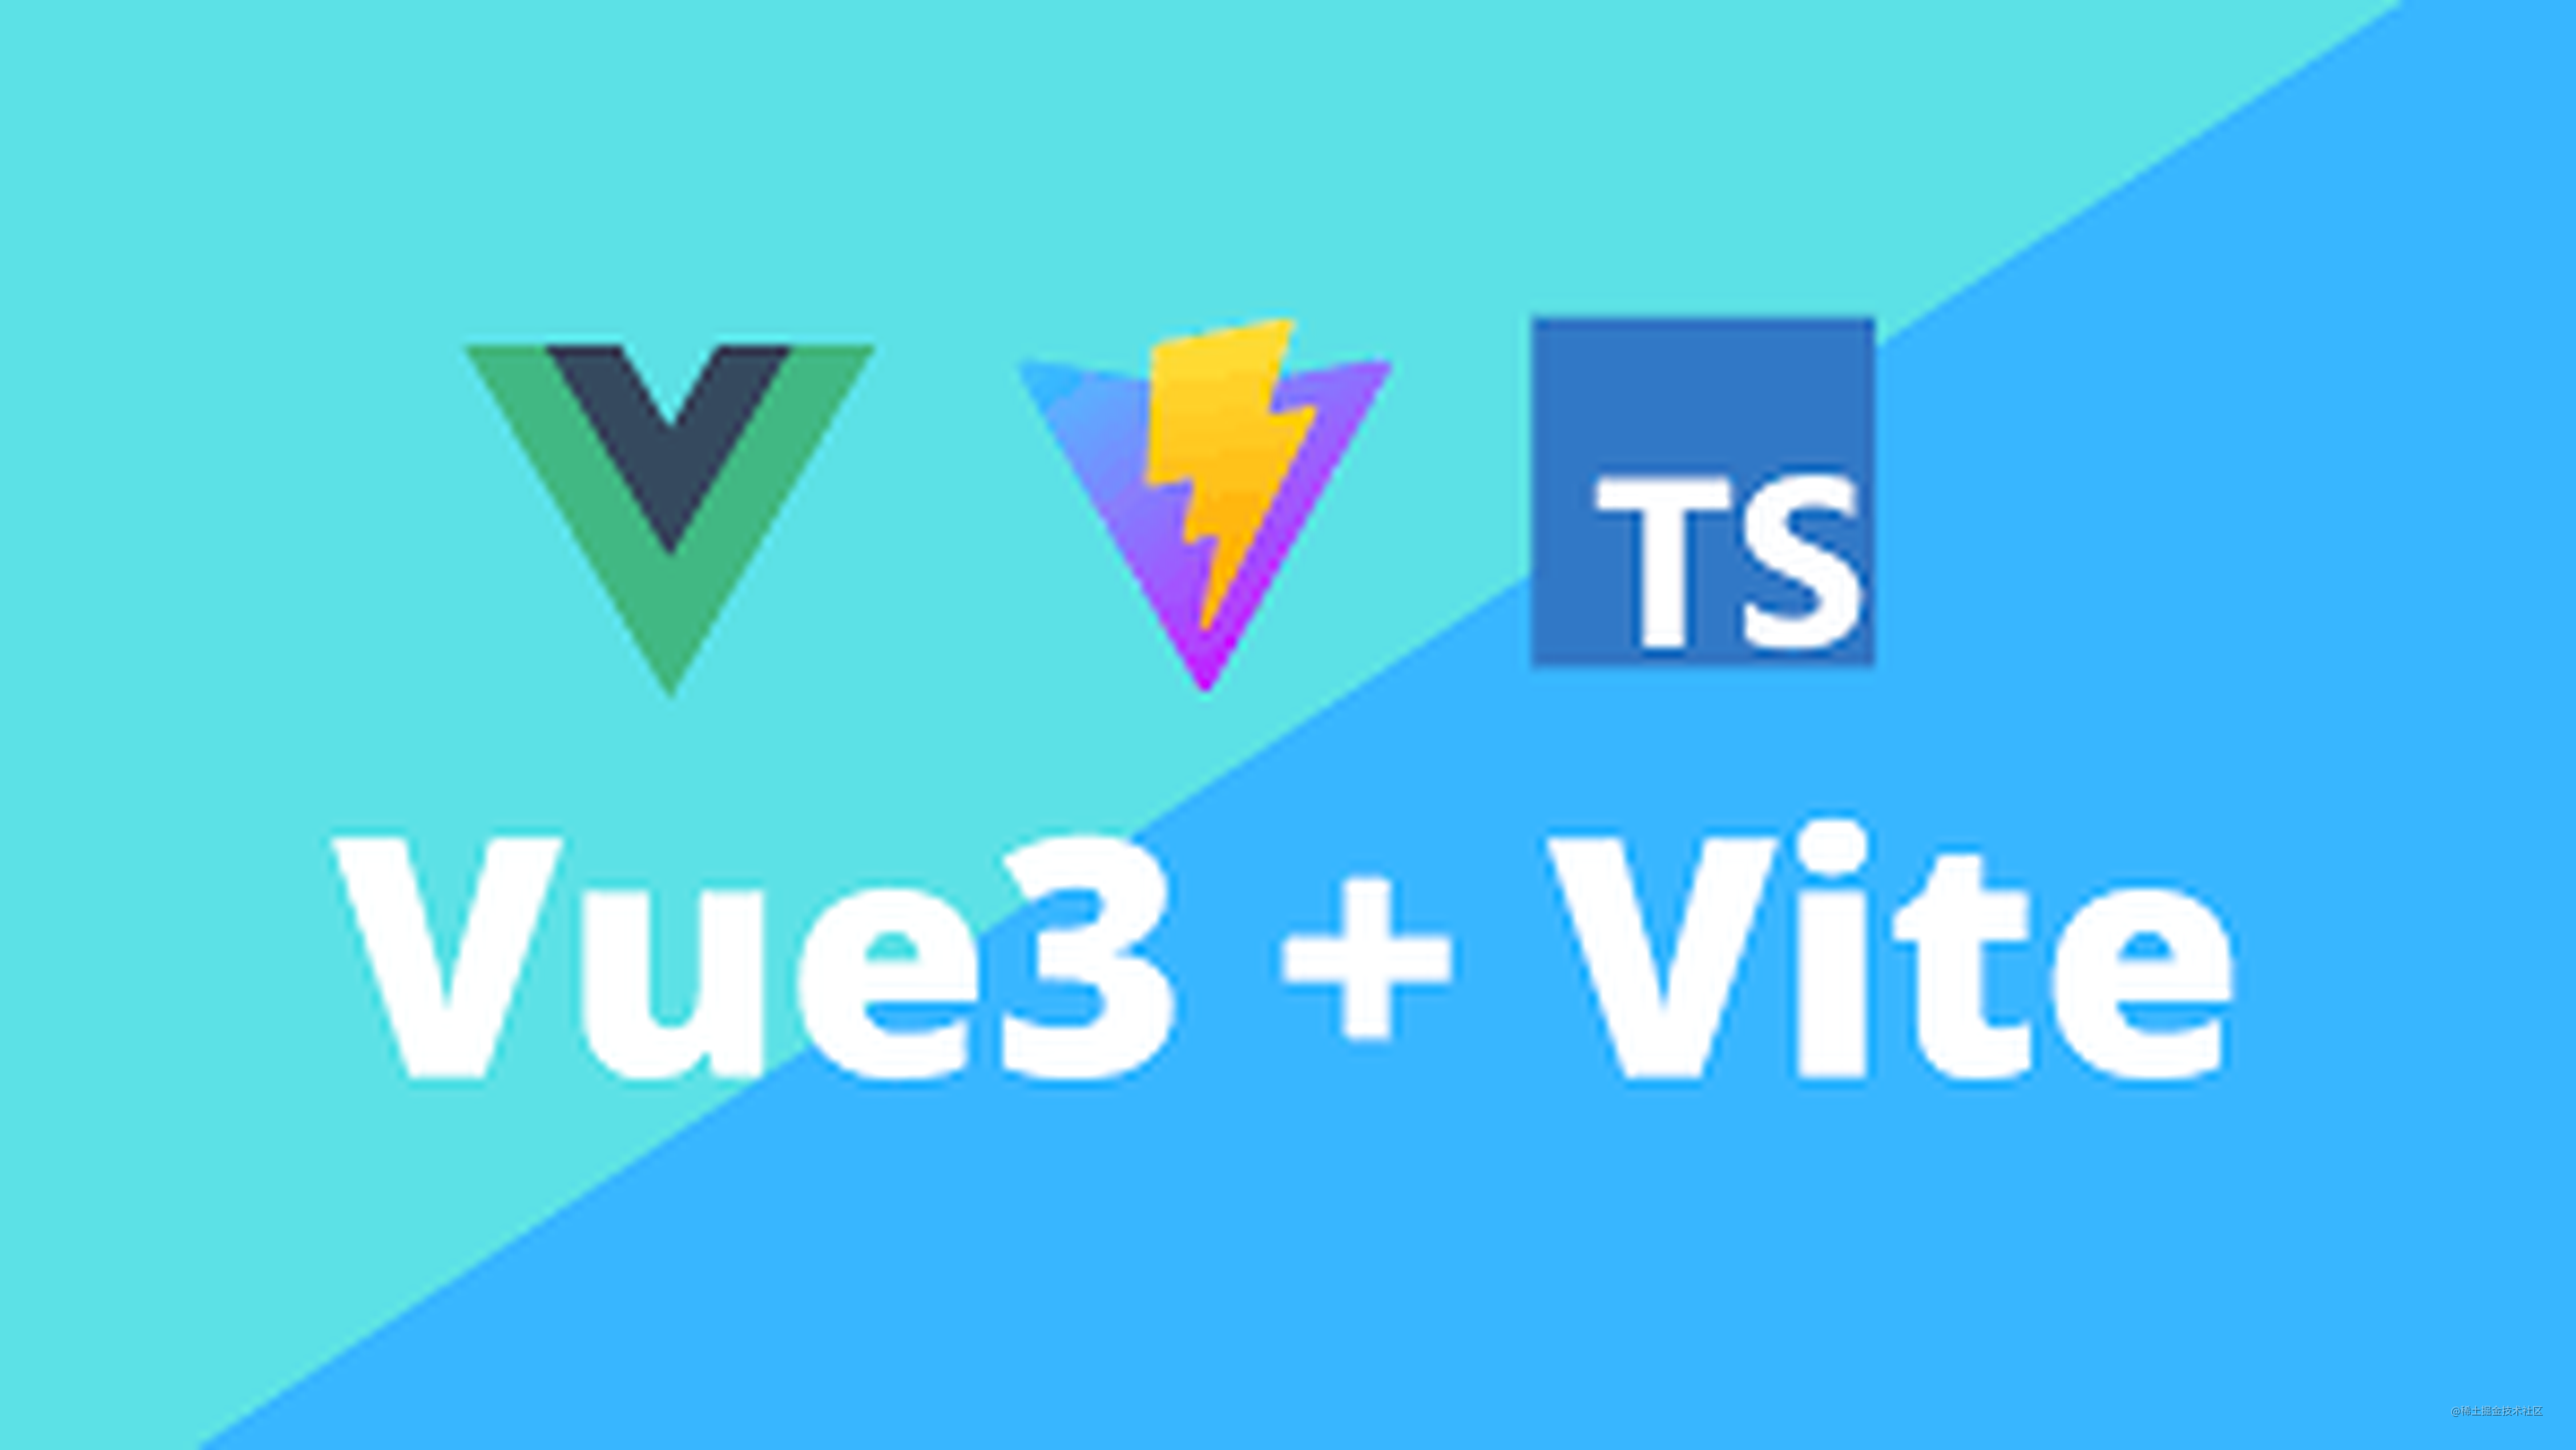 Vue3+Vite+TS+Eslint（Airbnb规则）搭建生产项目，踩坑详记（一）